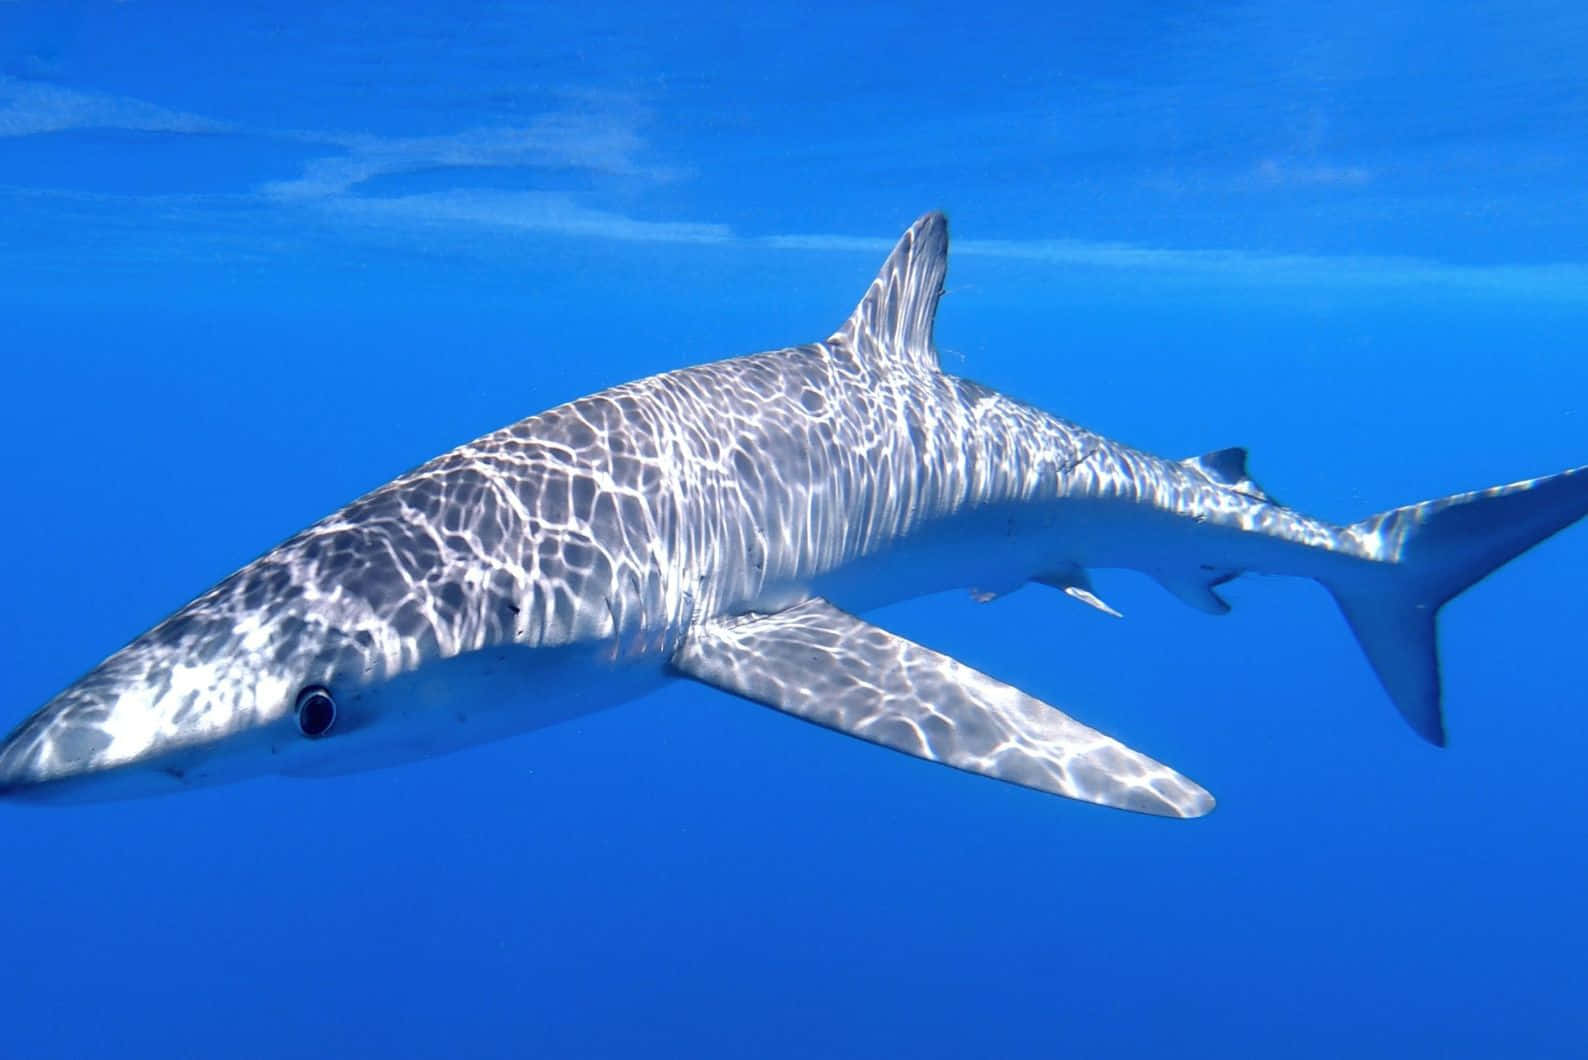 Blue Shark Underwater Swimming.jpg Wallpaper